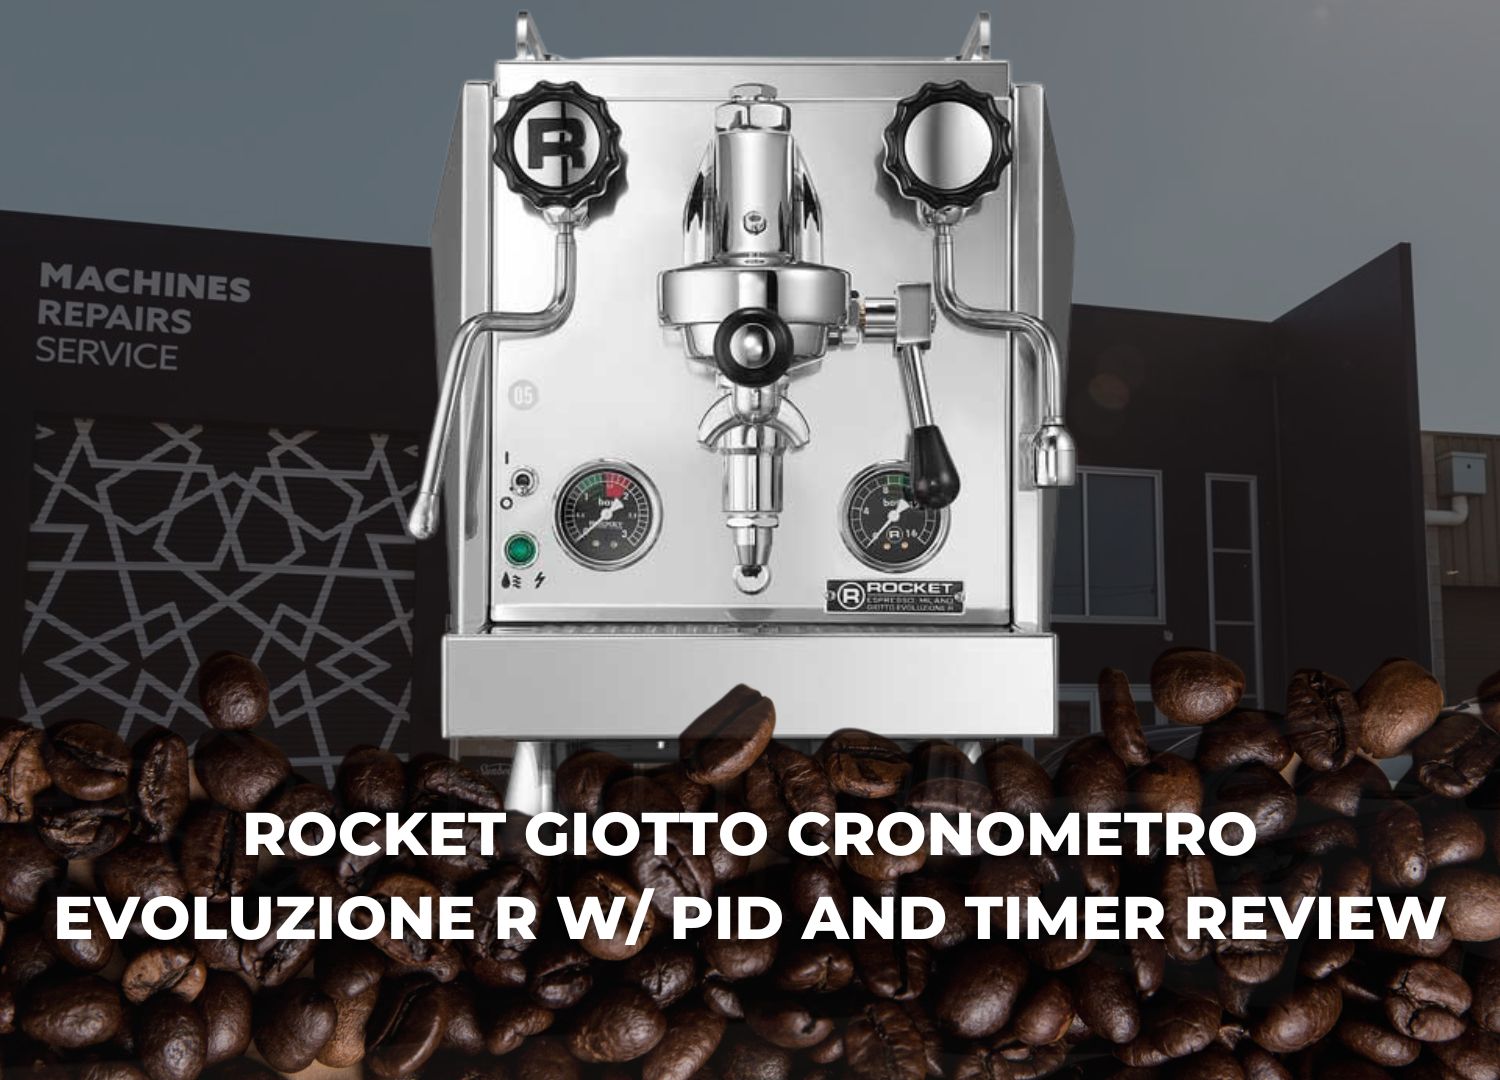 Rocket Espresso Giotto Cronometro Evoluzione R W/ PID & Timer placed infront of the Coffee Complex shop.